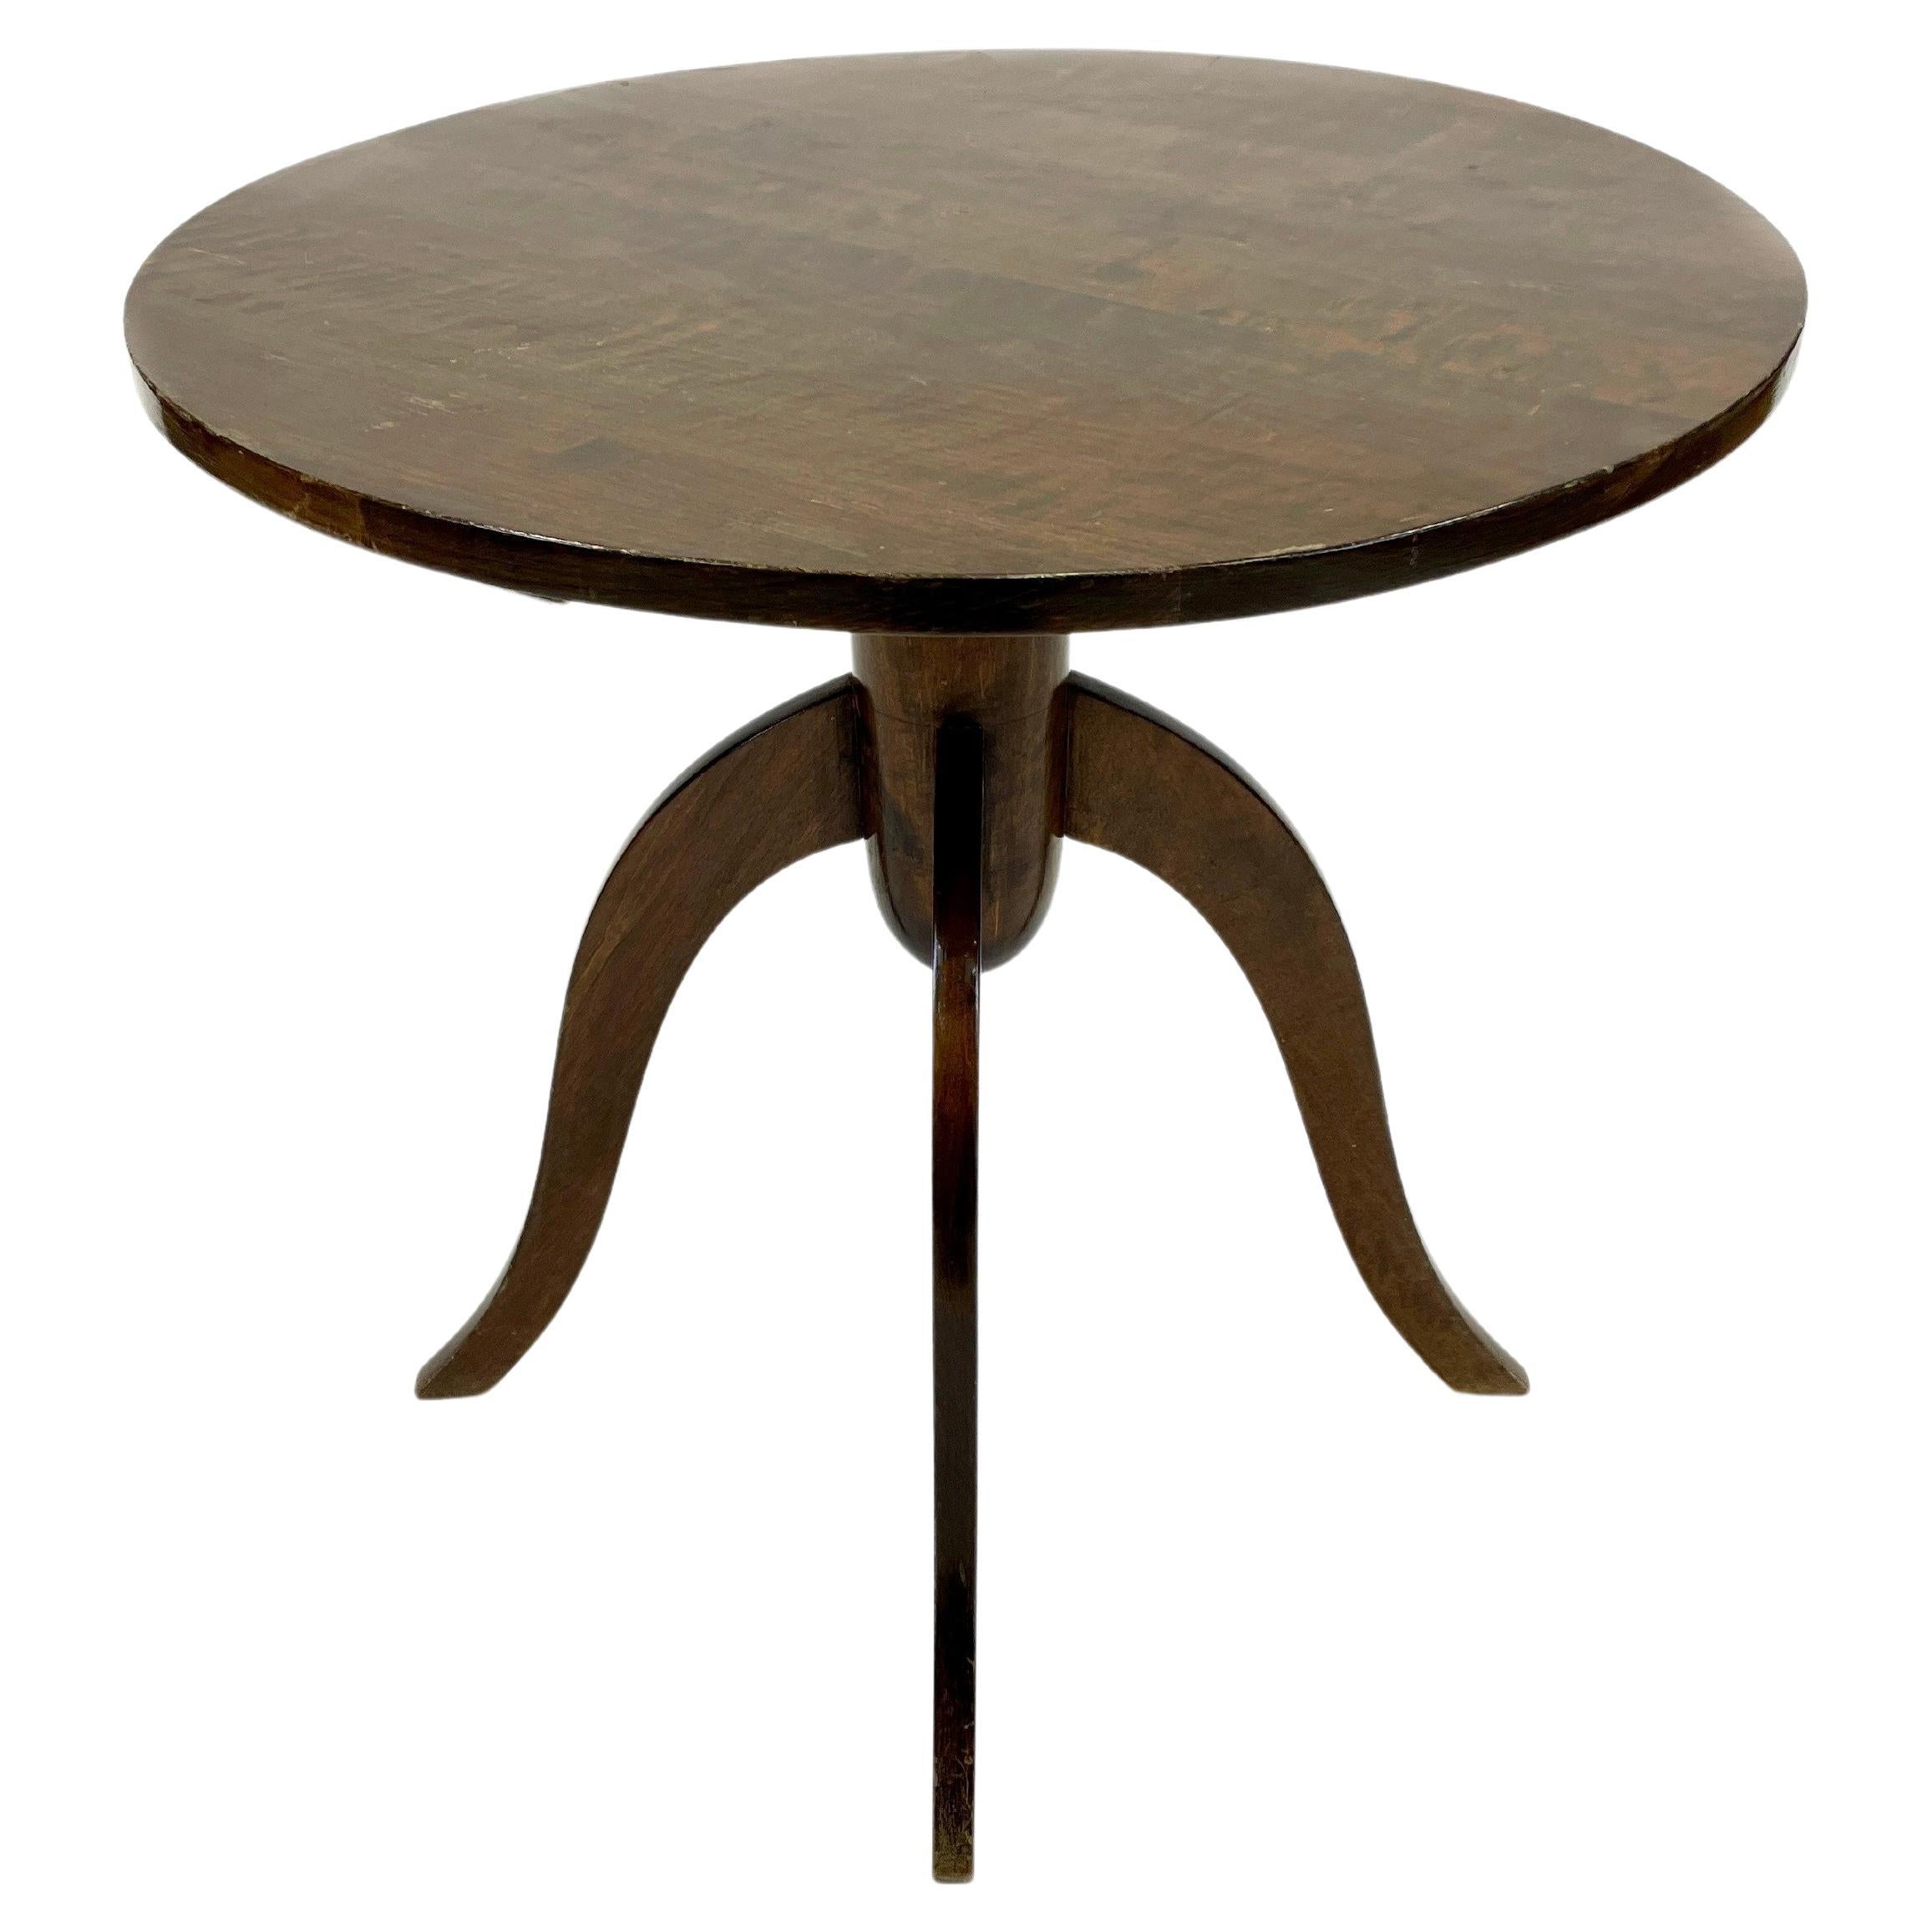 Gunnel Nyman Finnish Modern Side Table, 1937